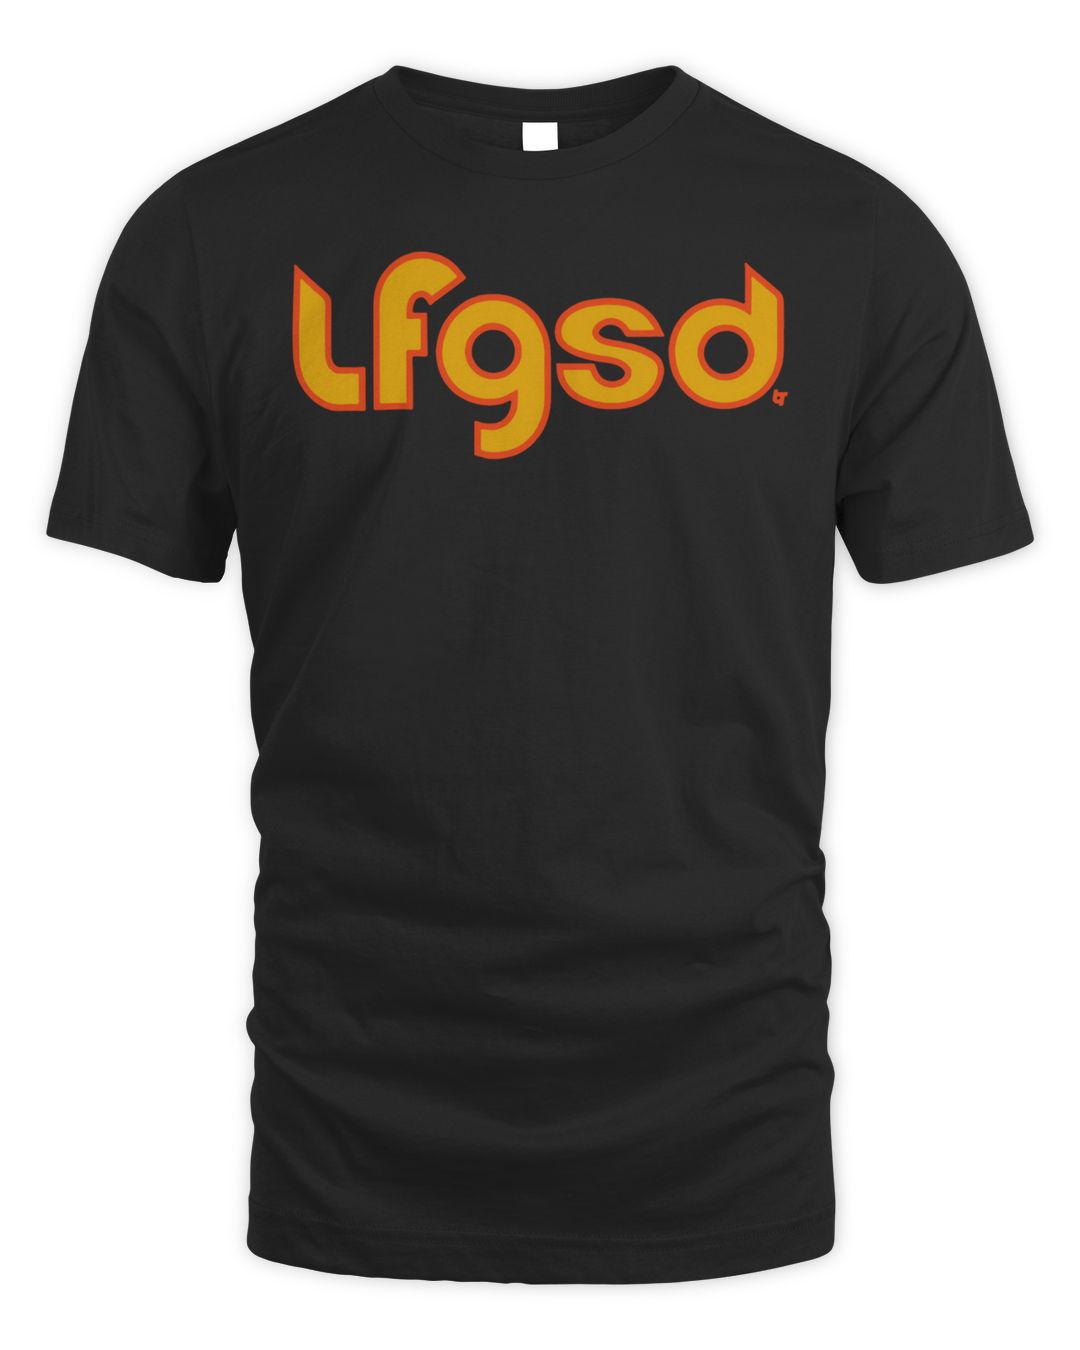 Lfgsd Shirt